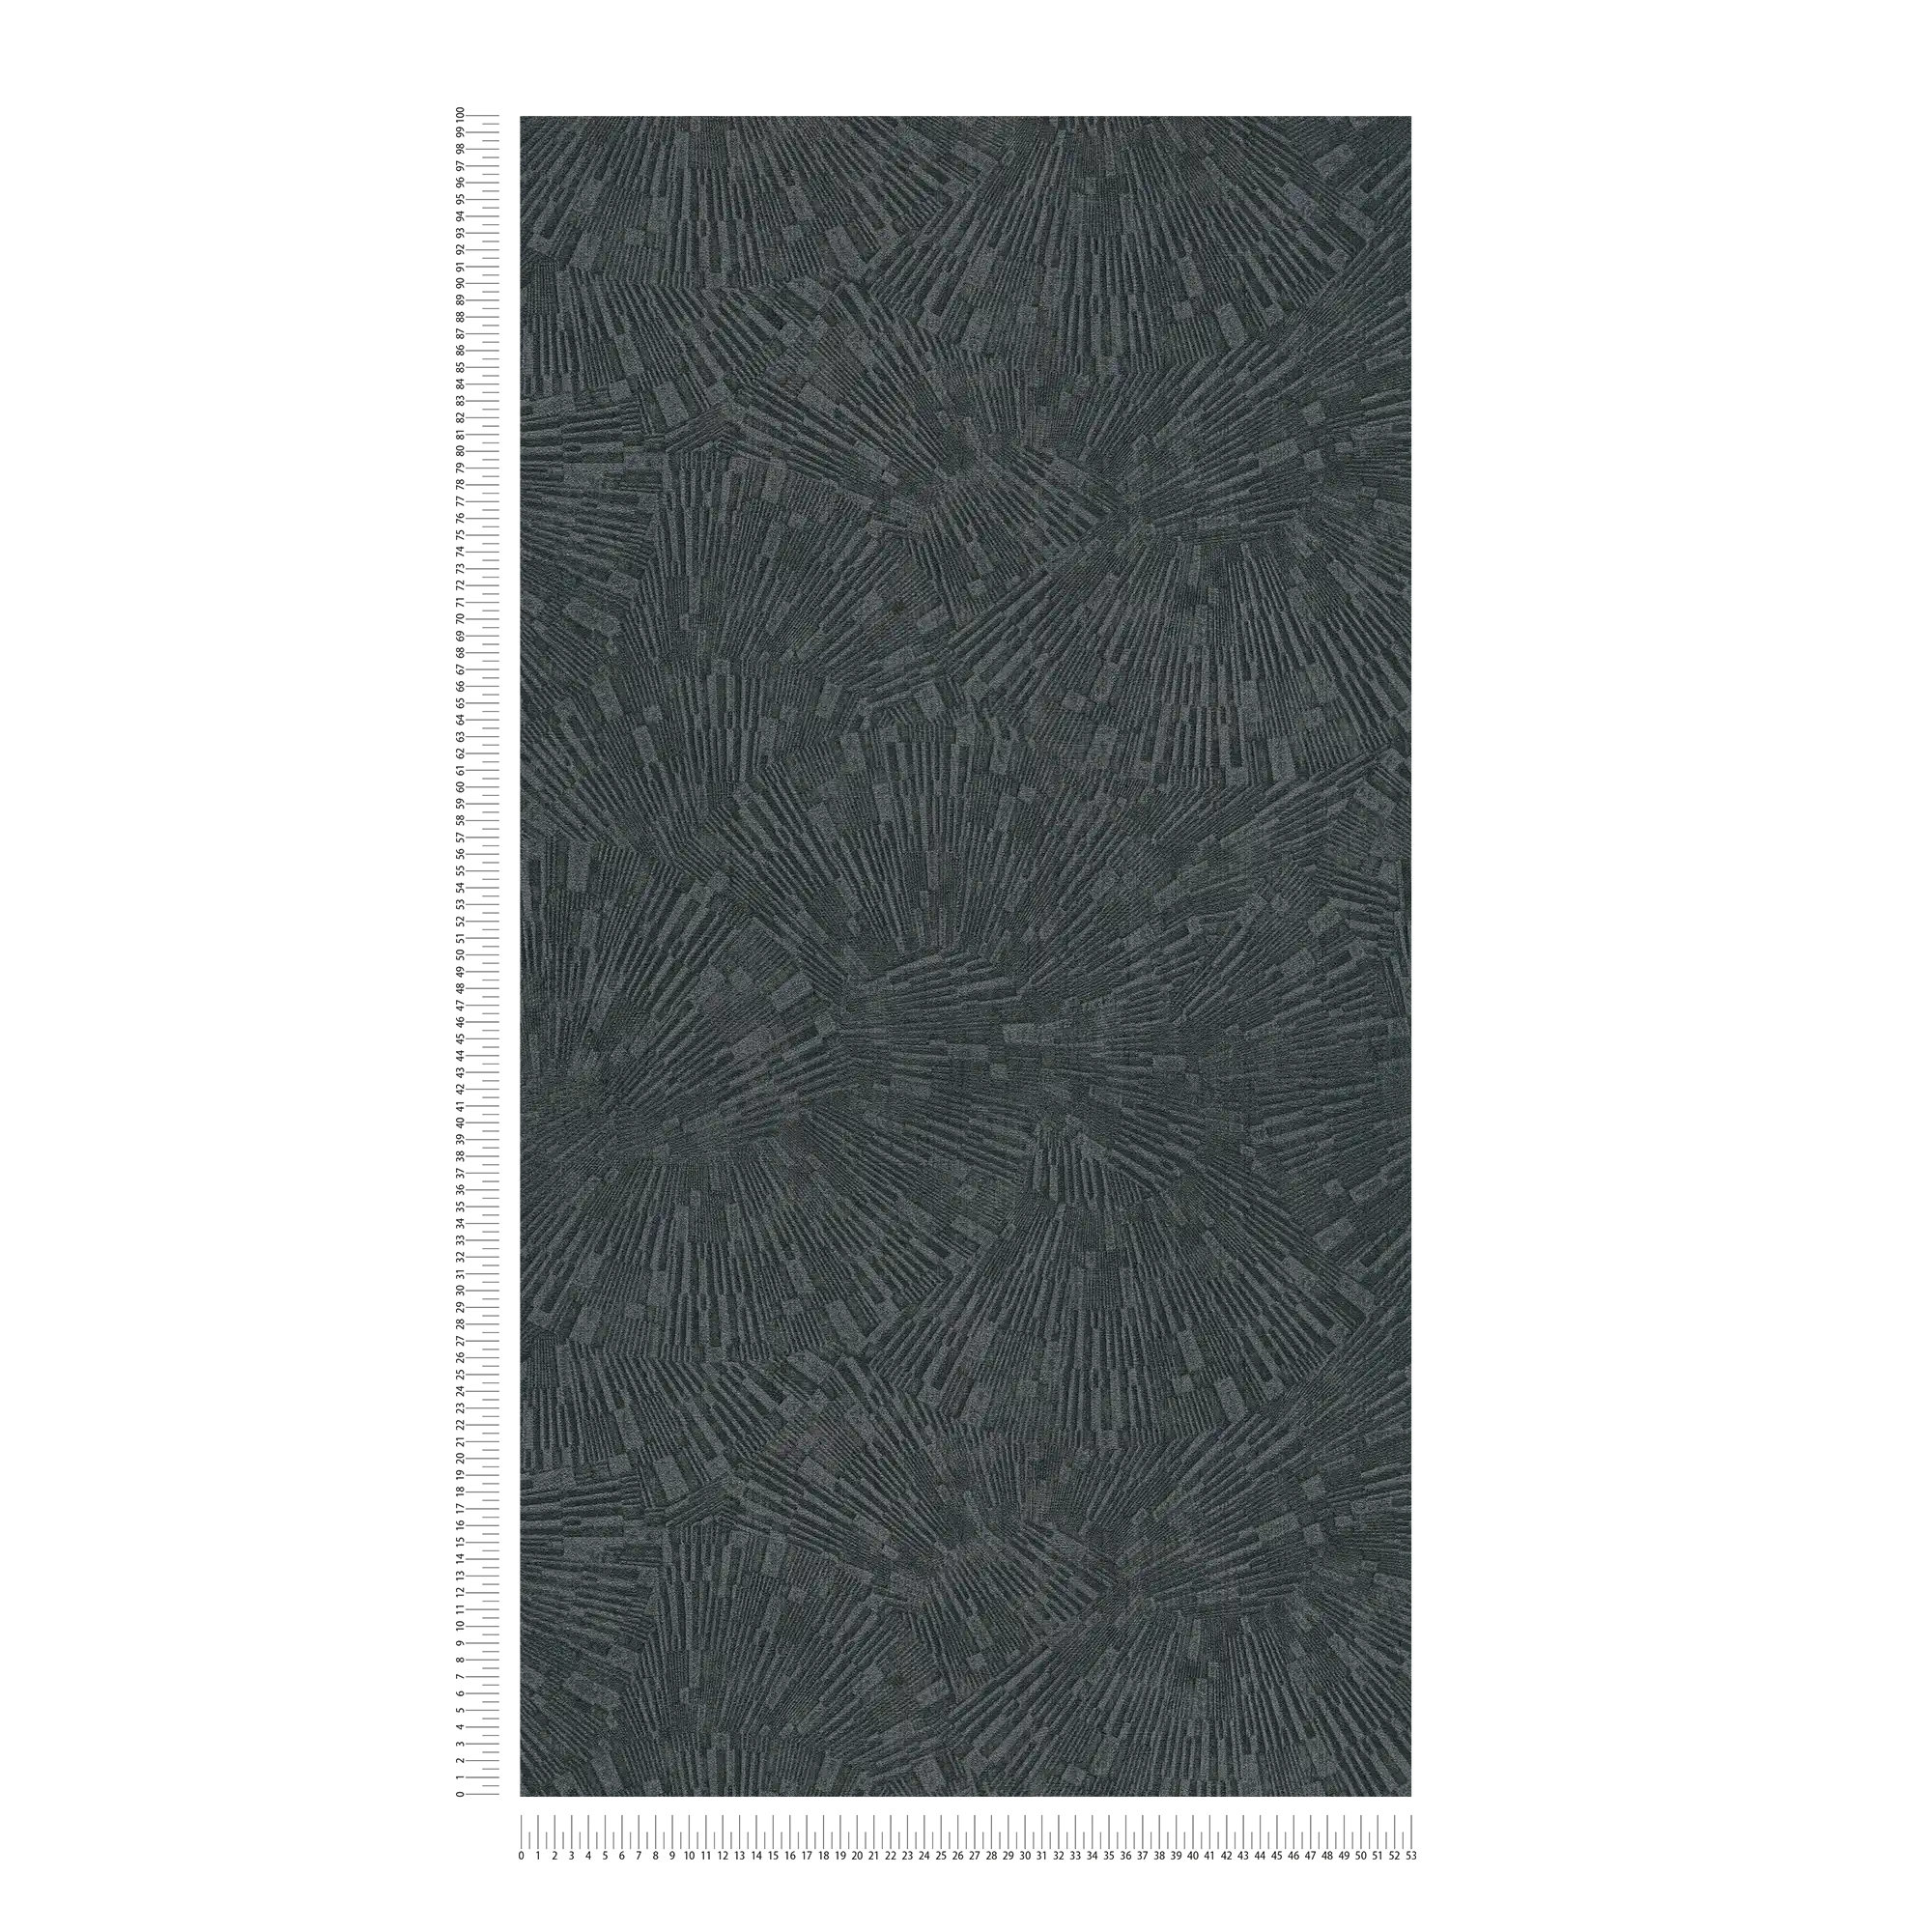             Carta da parati nera lucida con effetto texture - Marrone, Nero
        